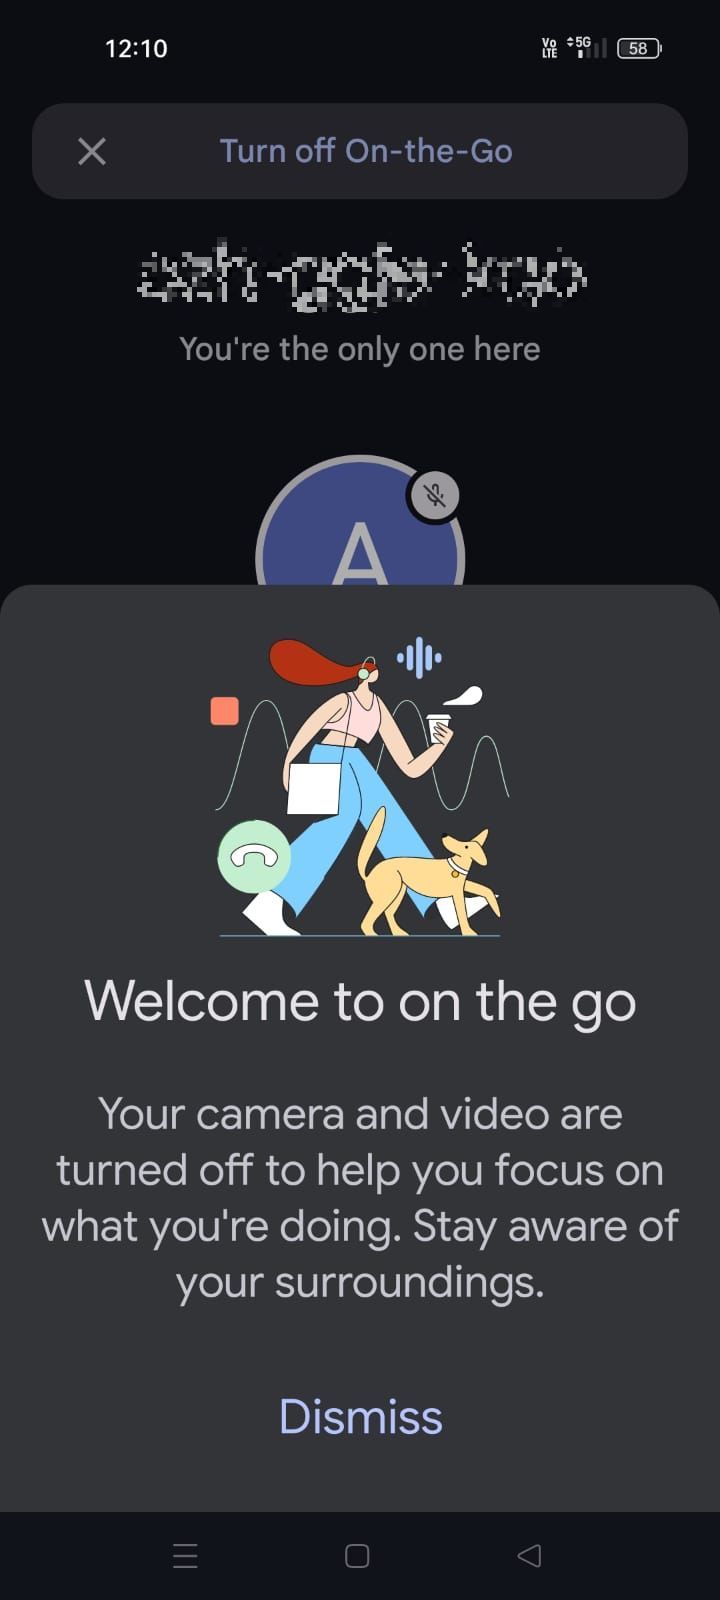 Captura de tela mostrando que o modo On-the-Go está ativo no app Google Meet